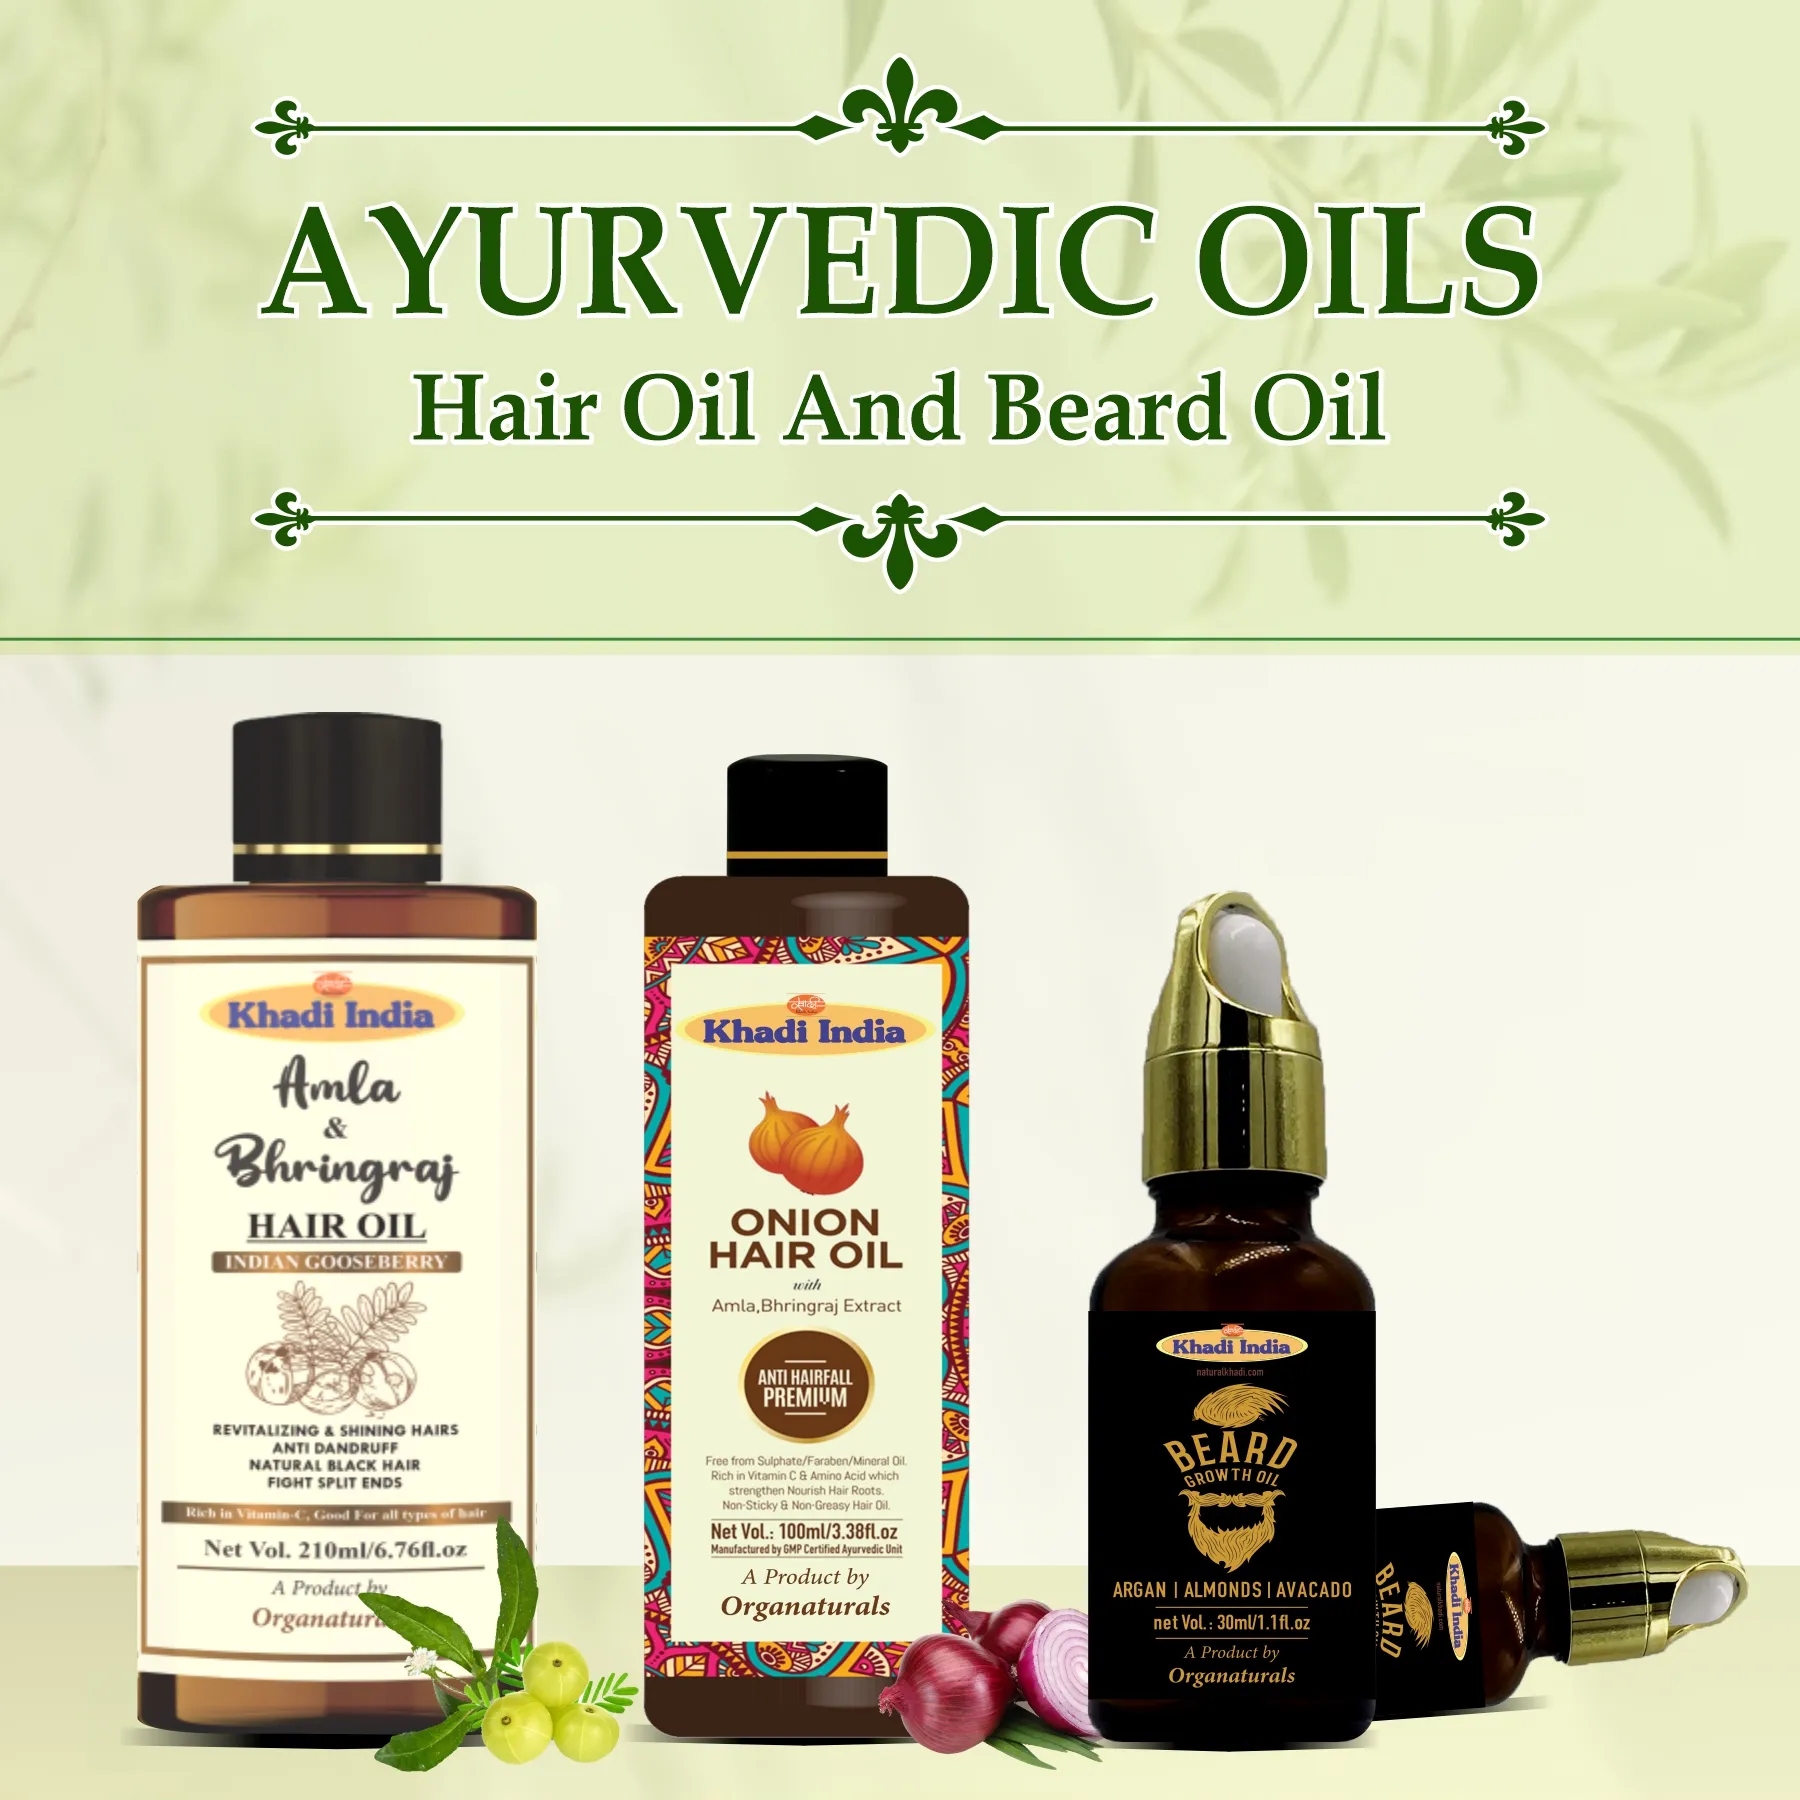 Ayurvedic Oils - www.dkihenna.com